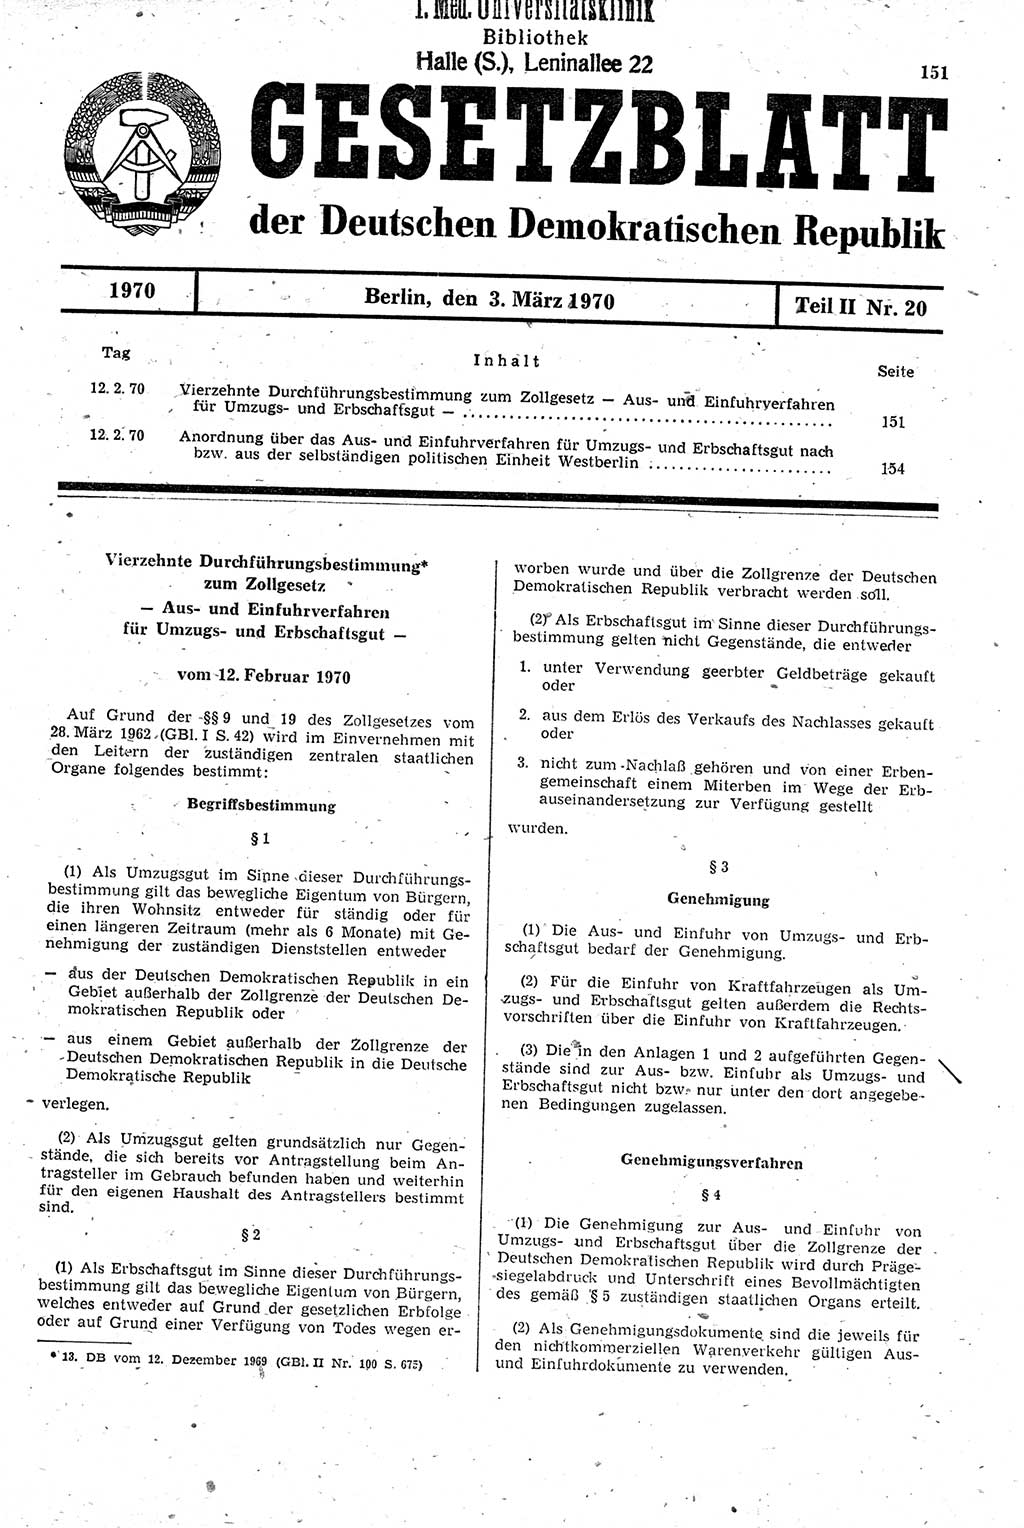 Gesetzblatt (GBl.) der Deutschen Demokratischen Republik (DDR) Teil ⅠⅠ 1970, Seite 151 (GBl. DDR ⅠⅠ 1970, S. 151)